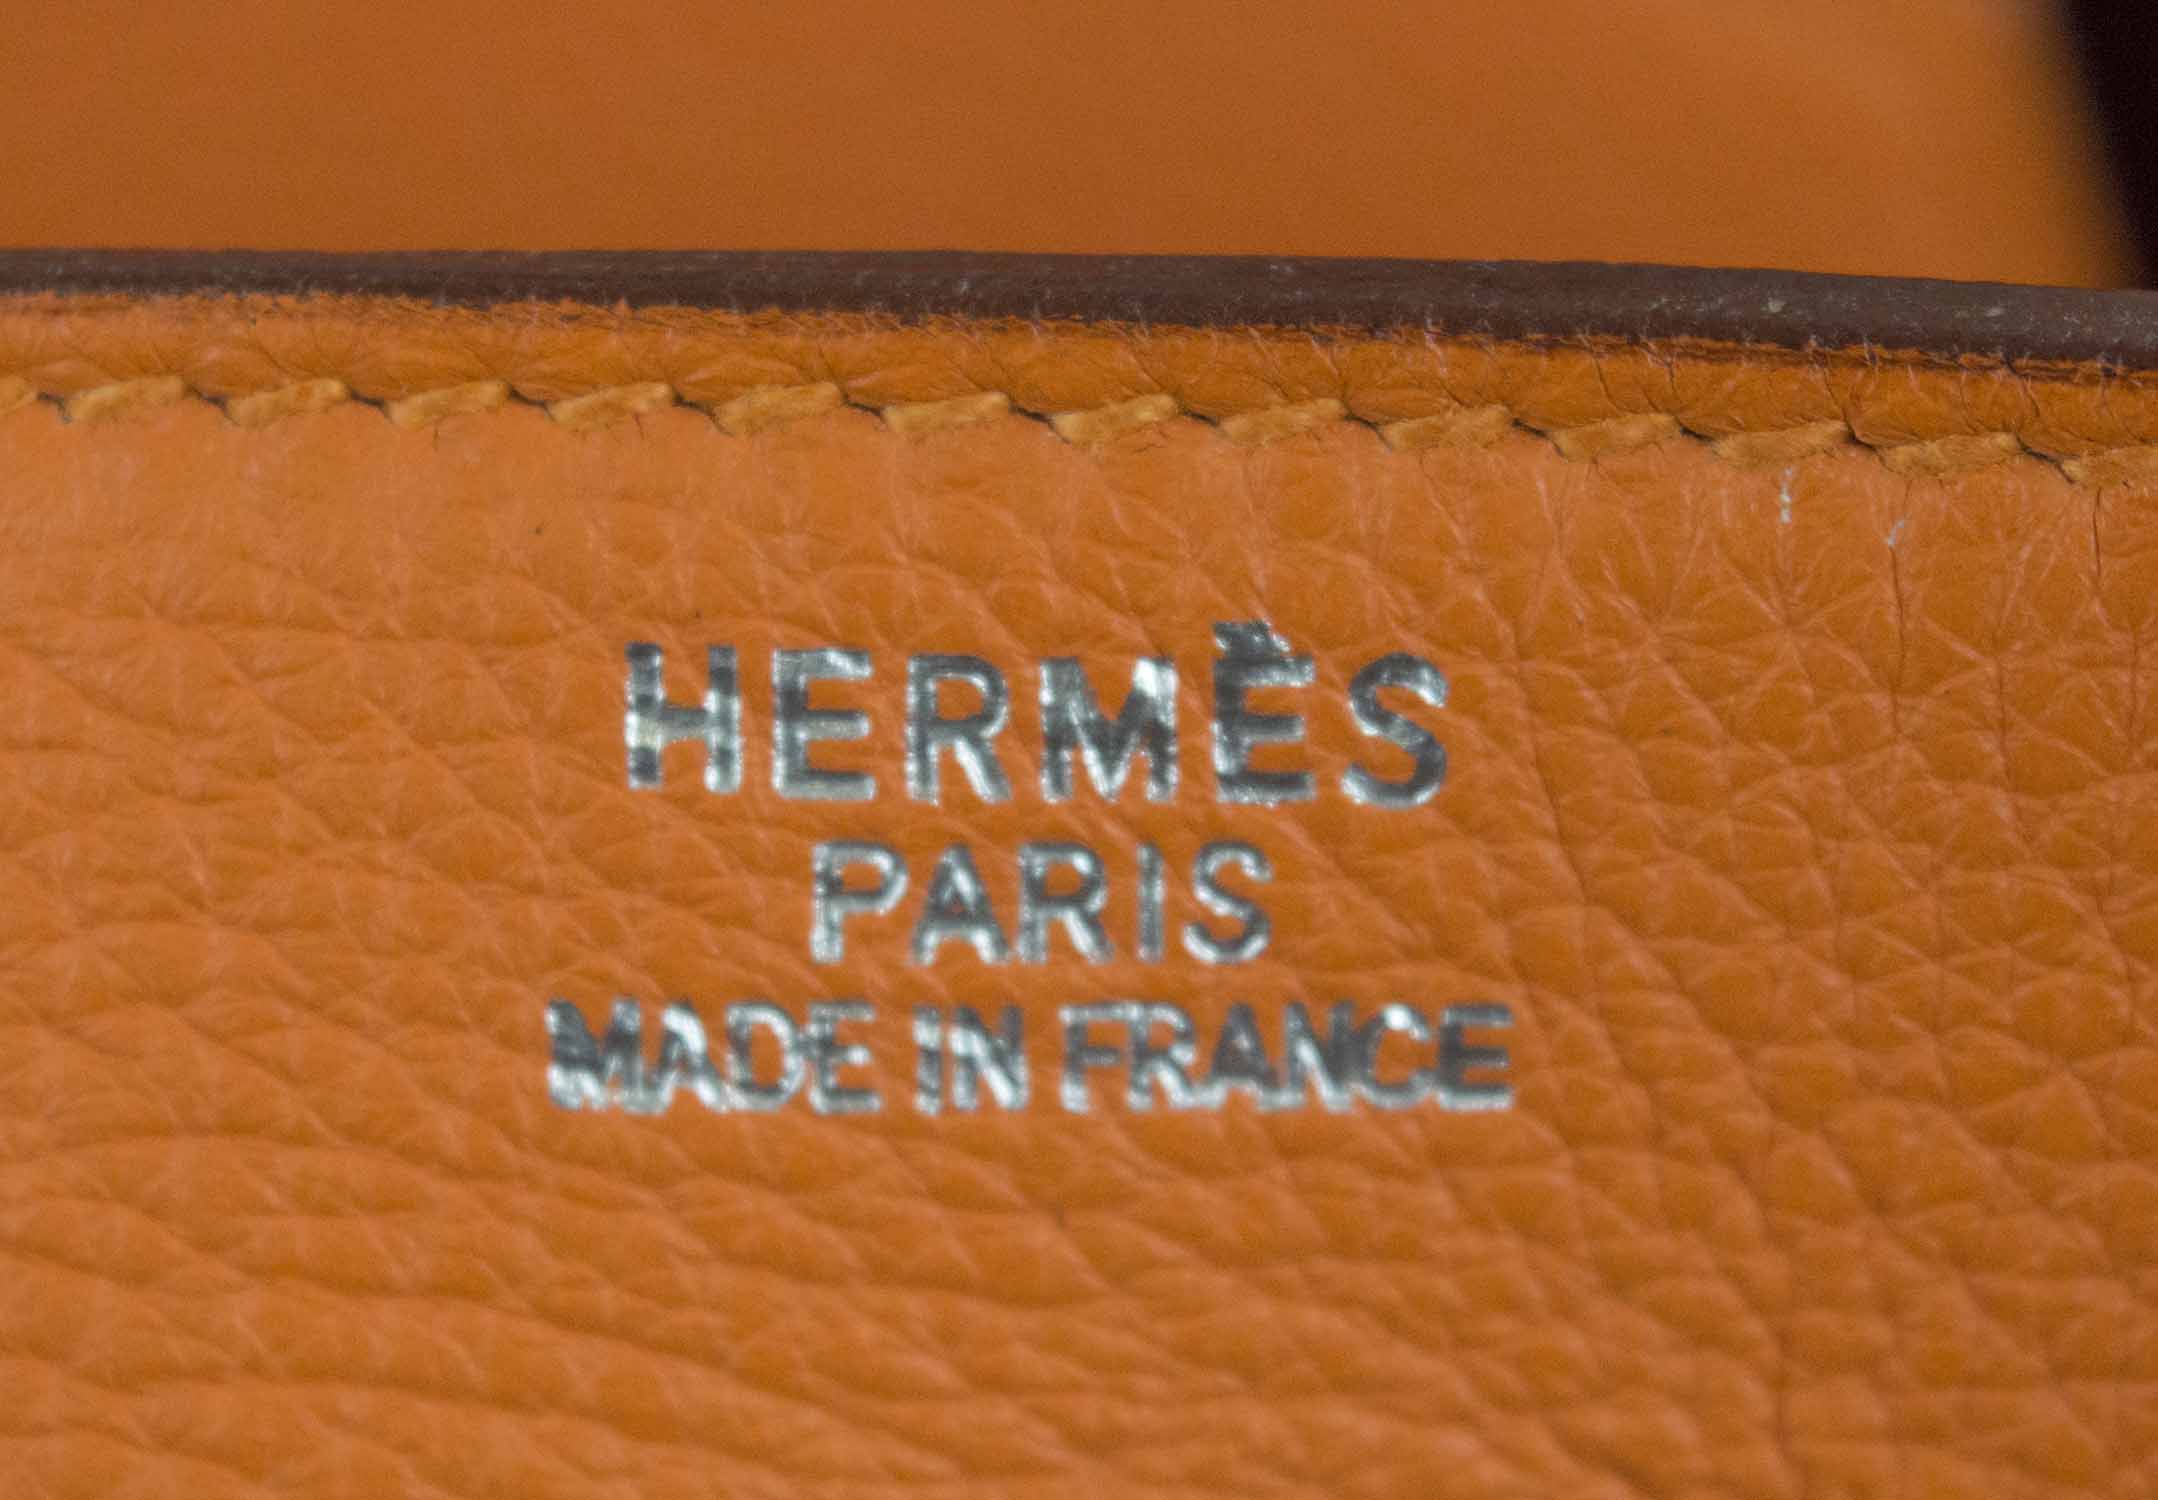 RARE HERMÈS HAUT À COURROIE BIRKIN BAG 50, orange Clemence leather